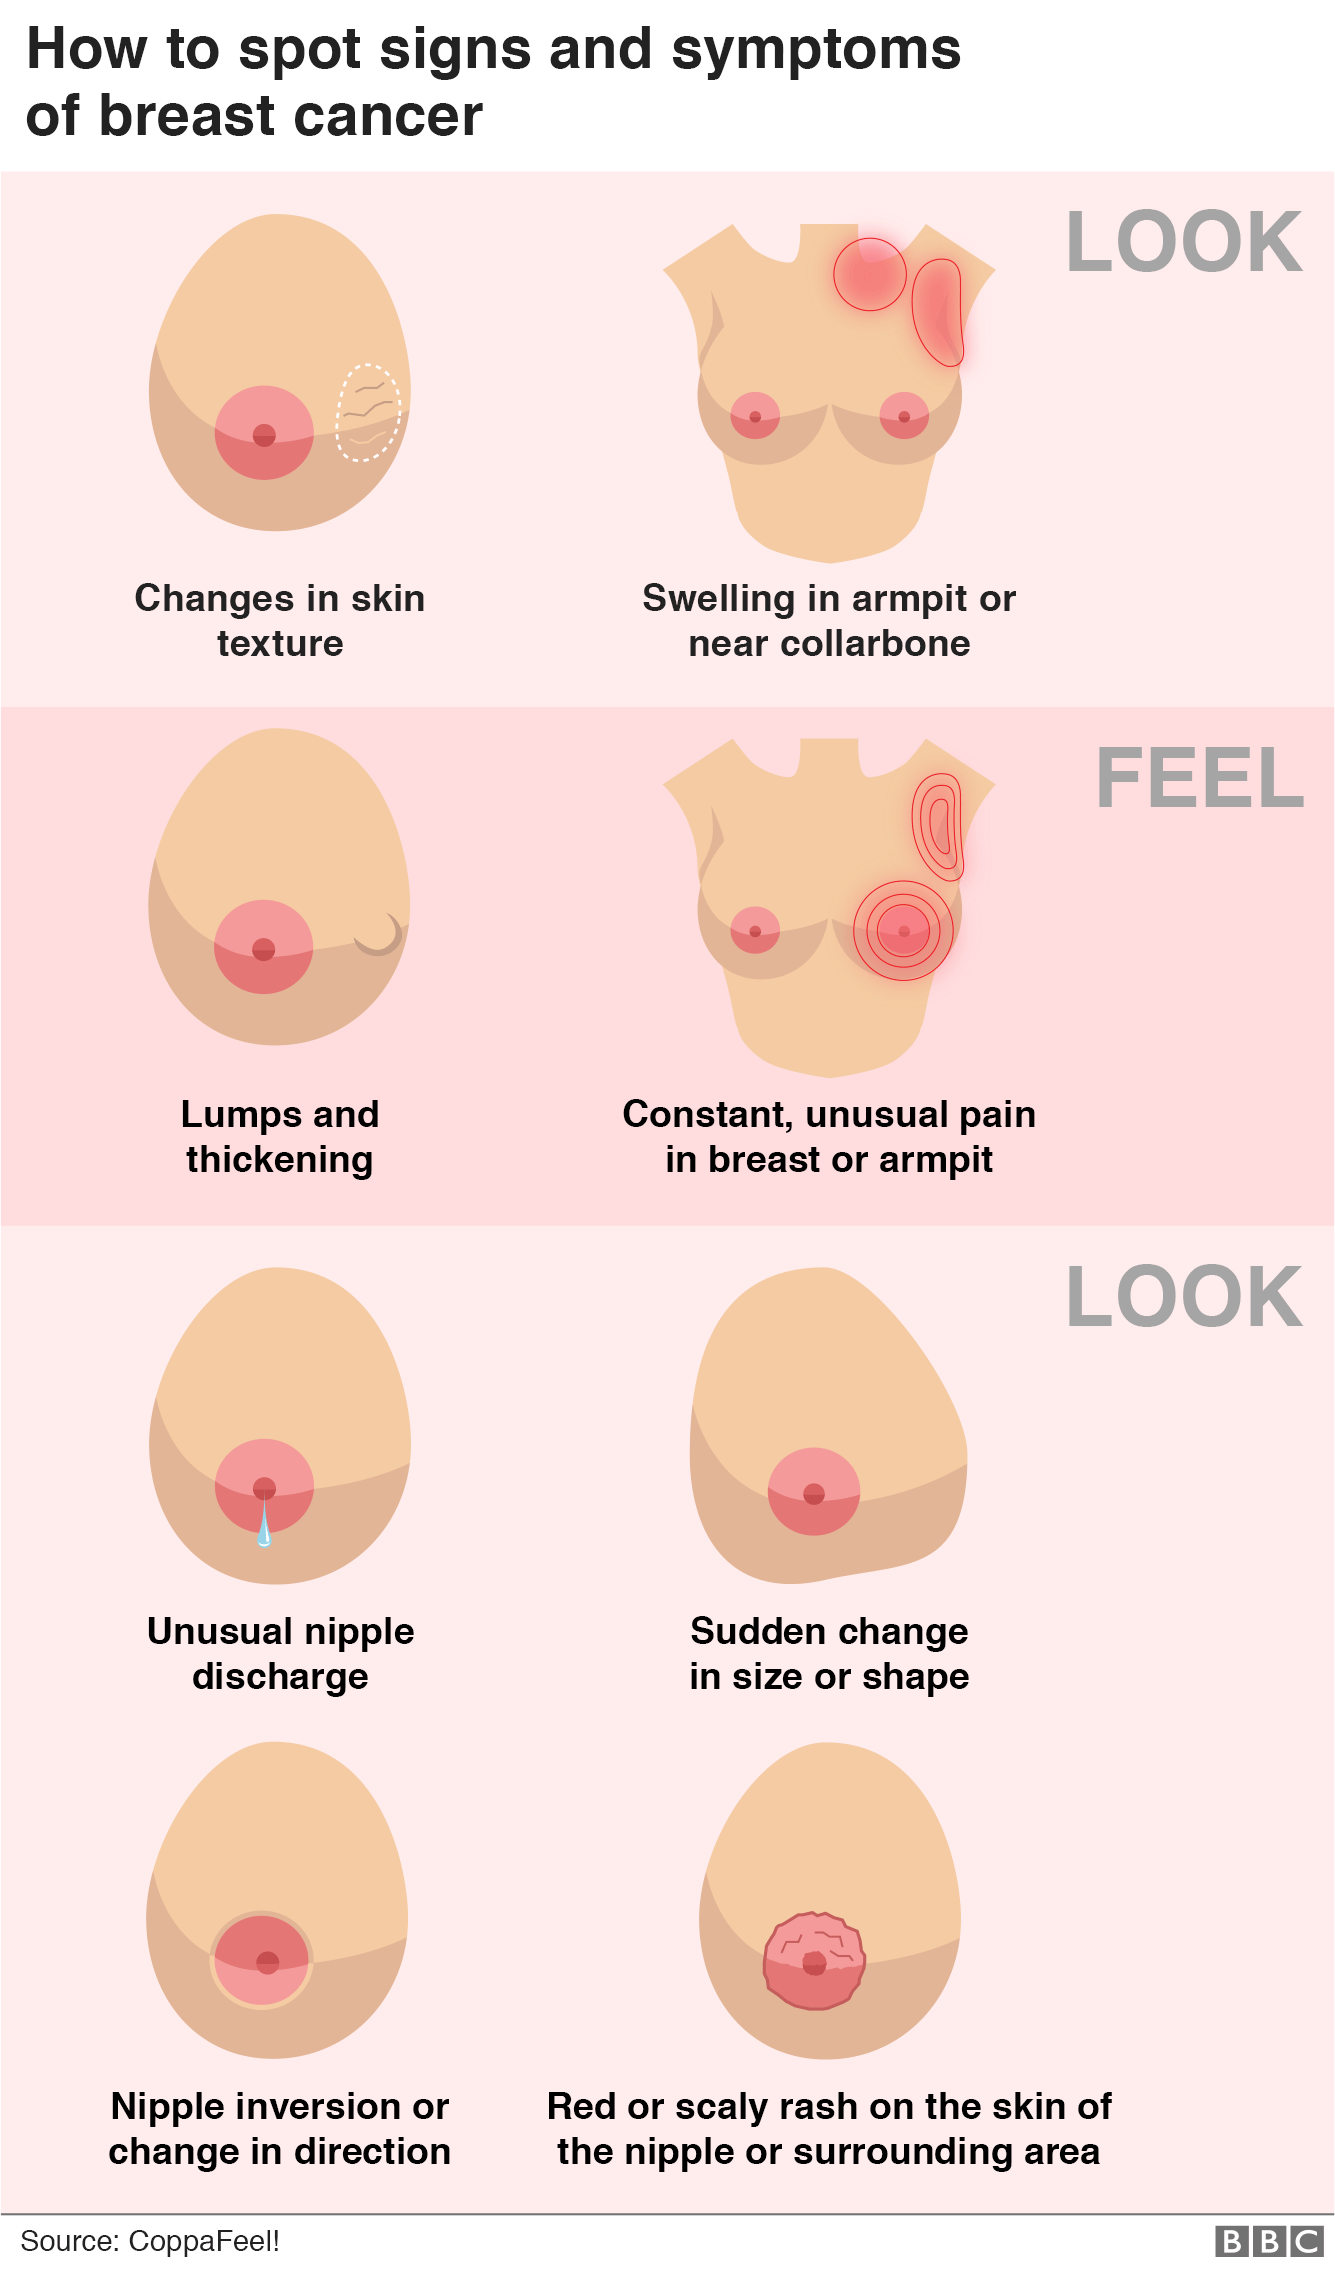 Графика, показывающая, как определить признаки и симптомы рака молочной железы